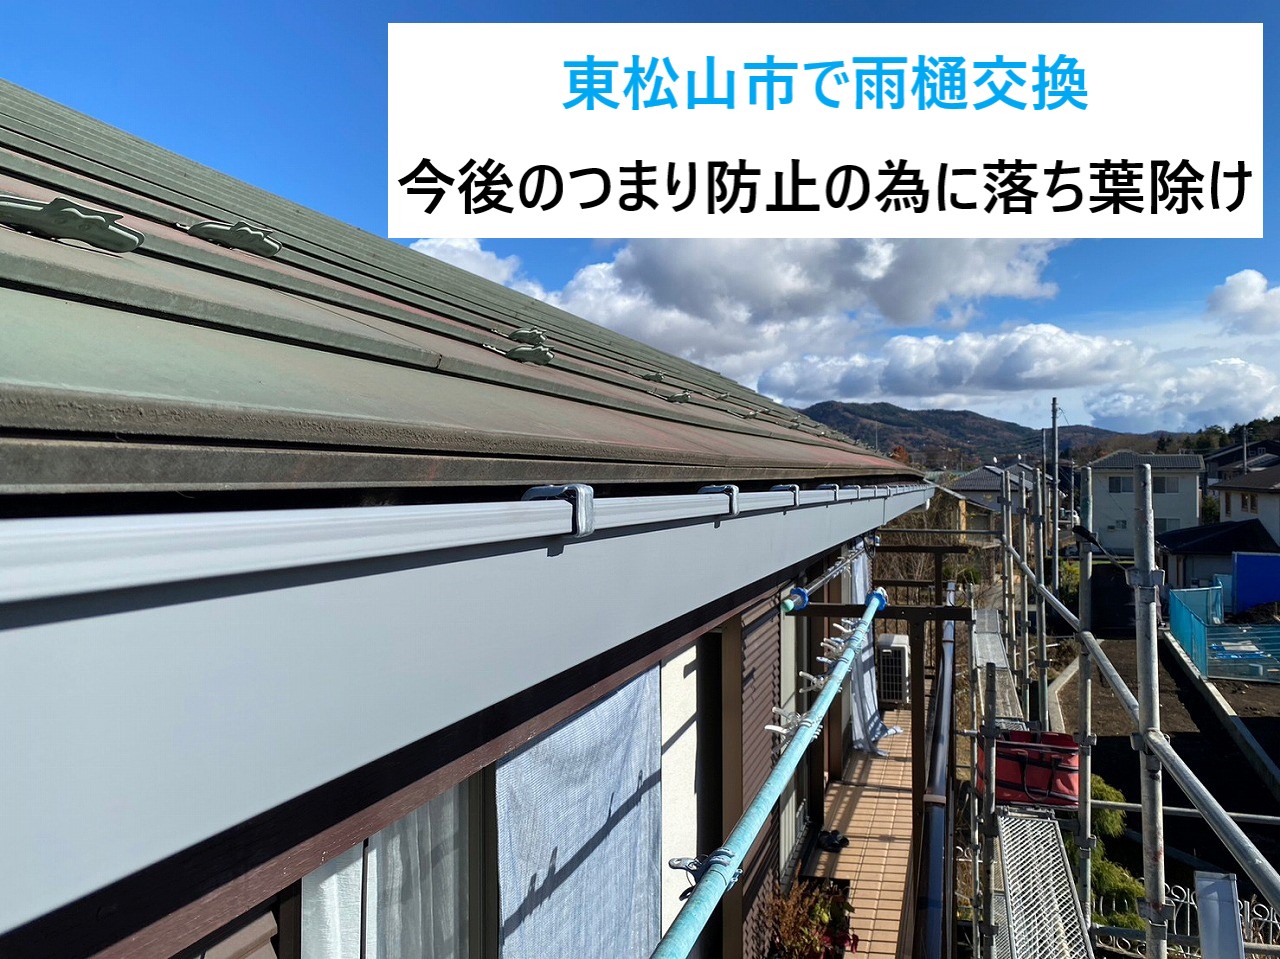 東松山市で劣化による歪みある雨樋を交換！まとめて竪樋の交換と落ち葉除けを設置